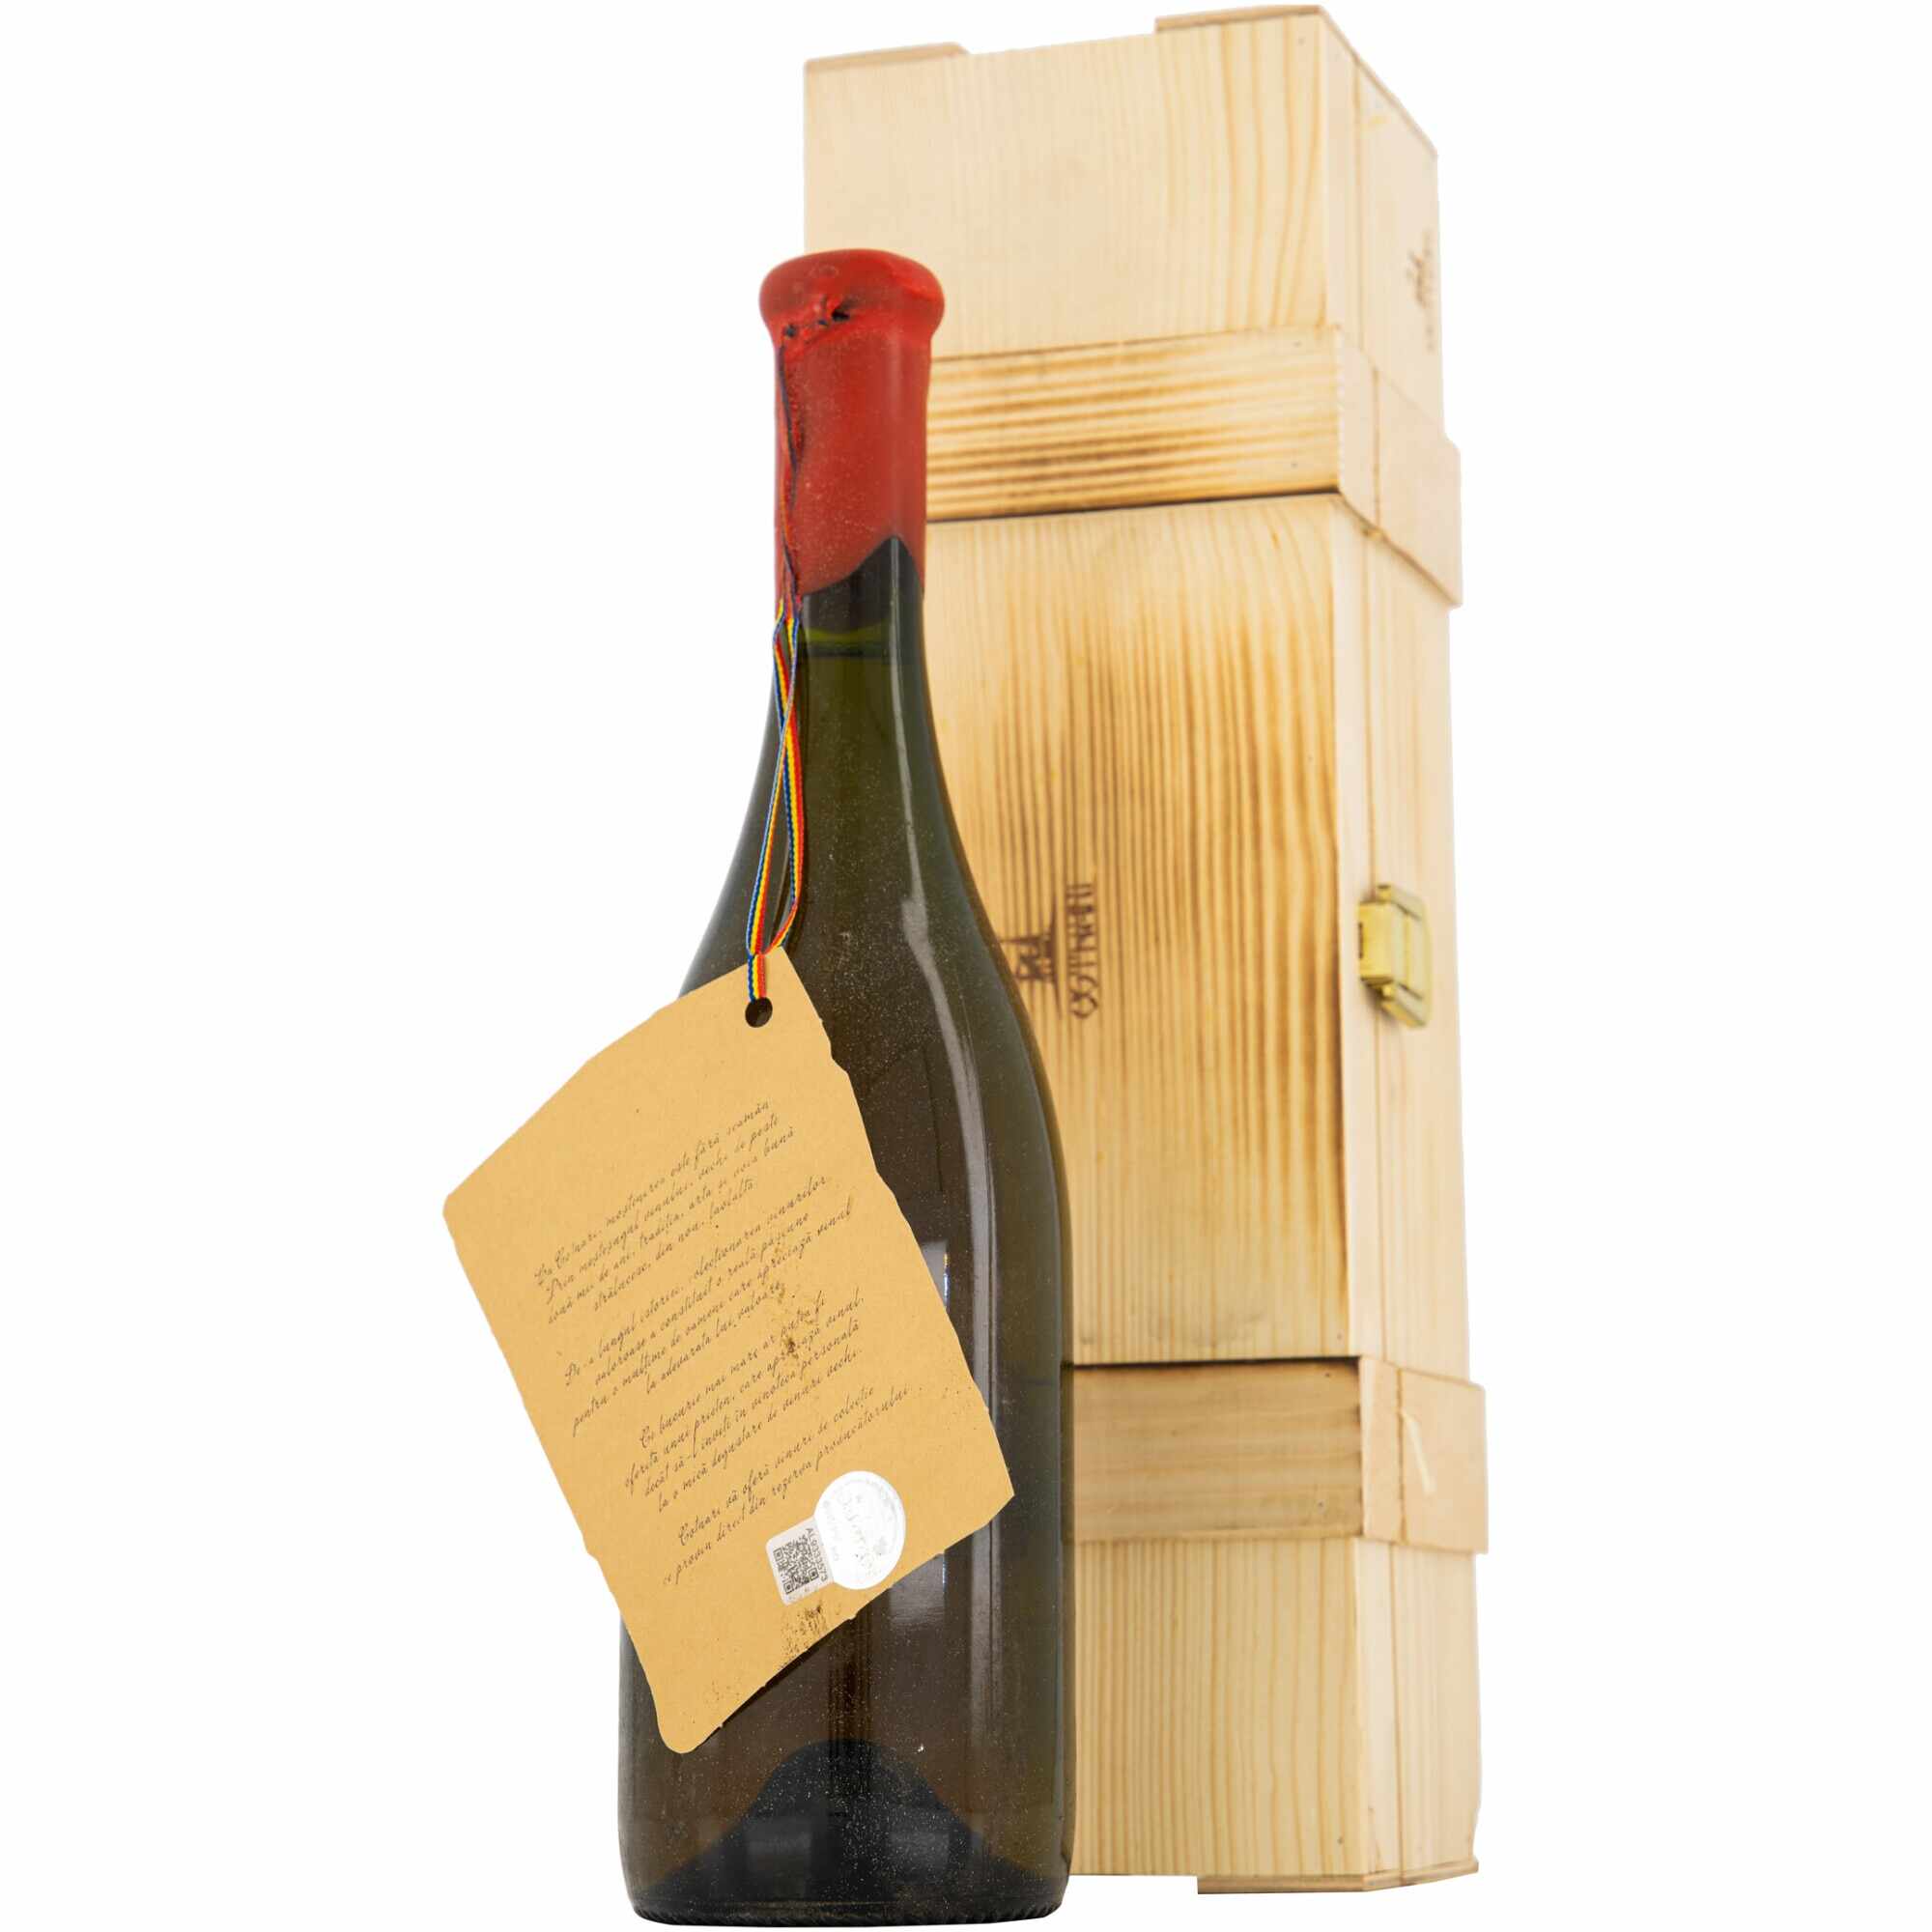 Vin Alb de Vinoteca Grasa de Cotnari, 2000, Dulce, 12%, 0.75l, Cutie de lemn